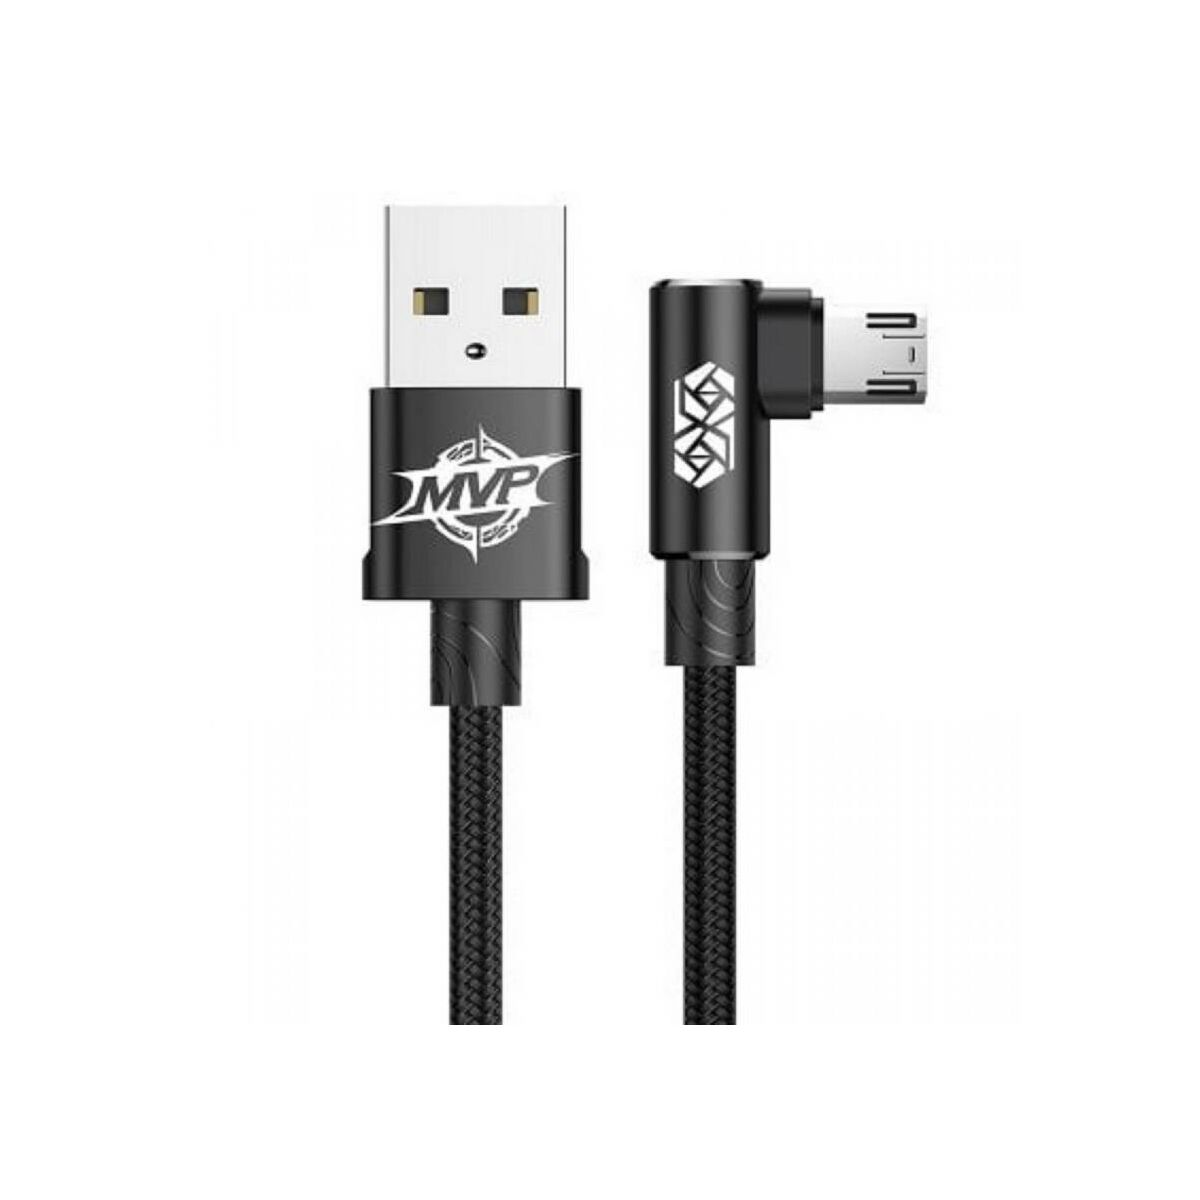 Kép 2/2 - Baseus Micro USB kábel, MVP Elbow Type Mobile Game, L-alakú csatlakozó, töltés/státusz-jelző LED, 1.5A, 2 m, fekete (CAMMVP-B01)